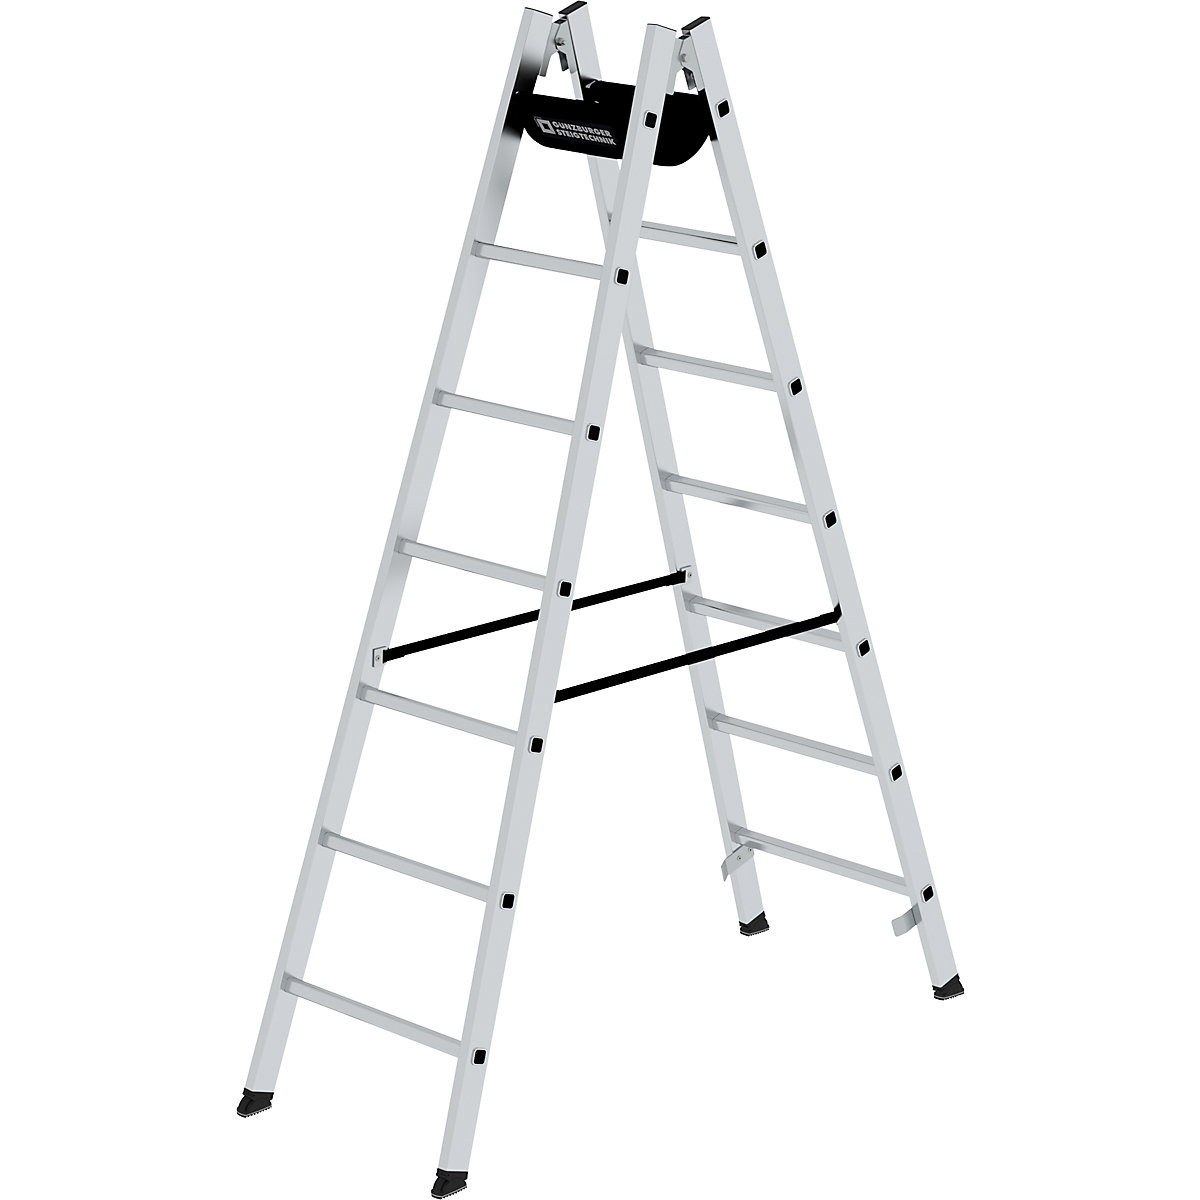 Bezpečnostný rebrík s priečkami, pochôdzny z oboch strán – MUNK, priečky 30 x 30 mm, nešmykľavé, 2 x 7 priečok-7